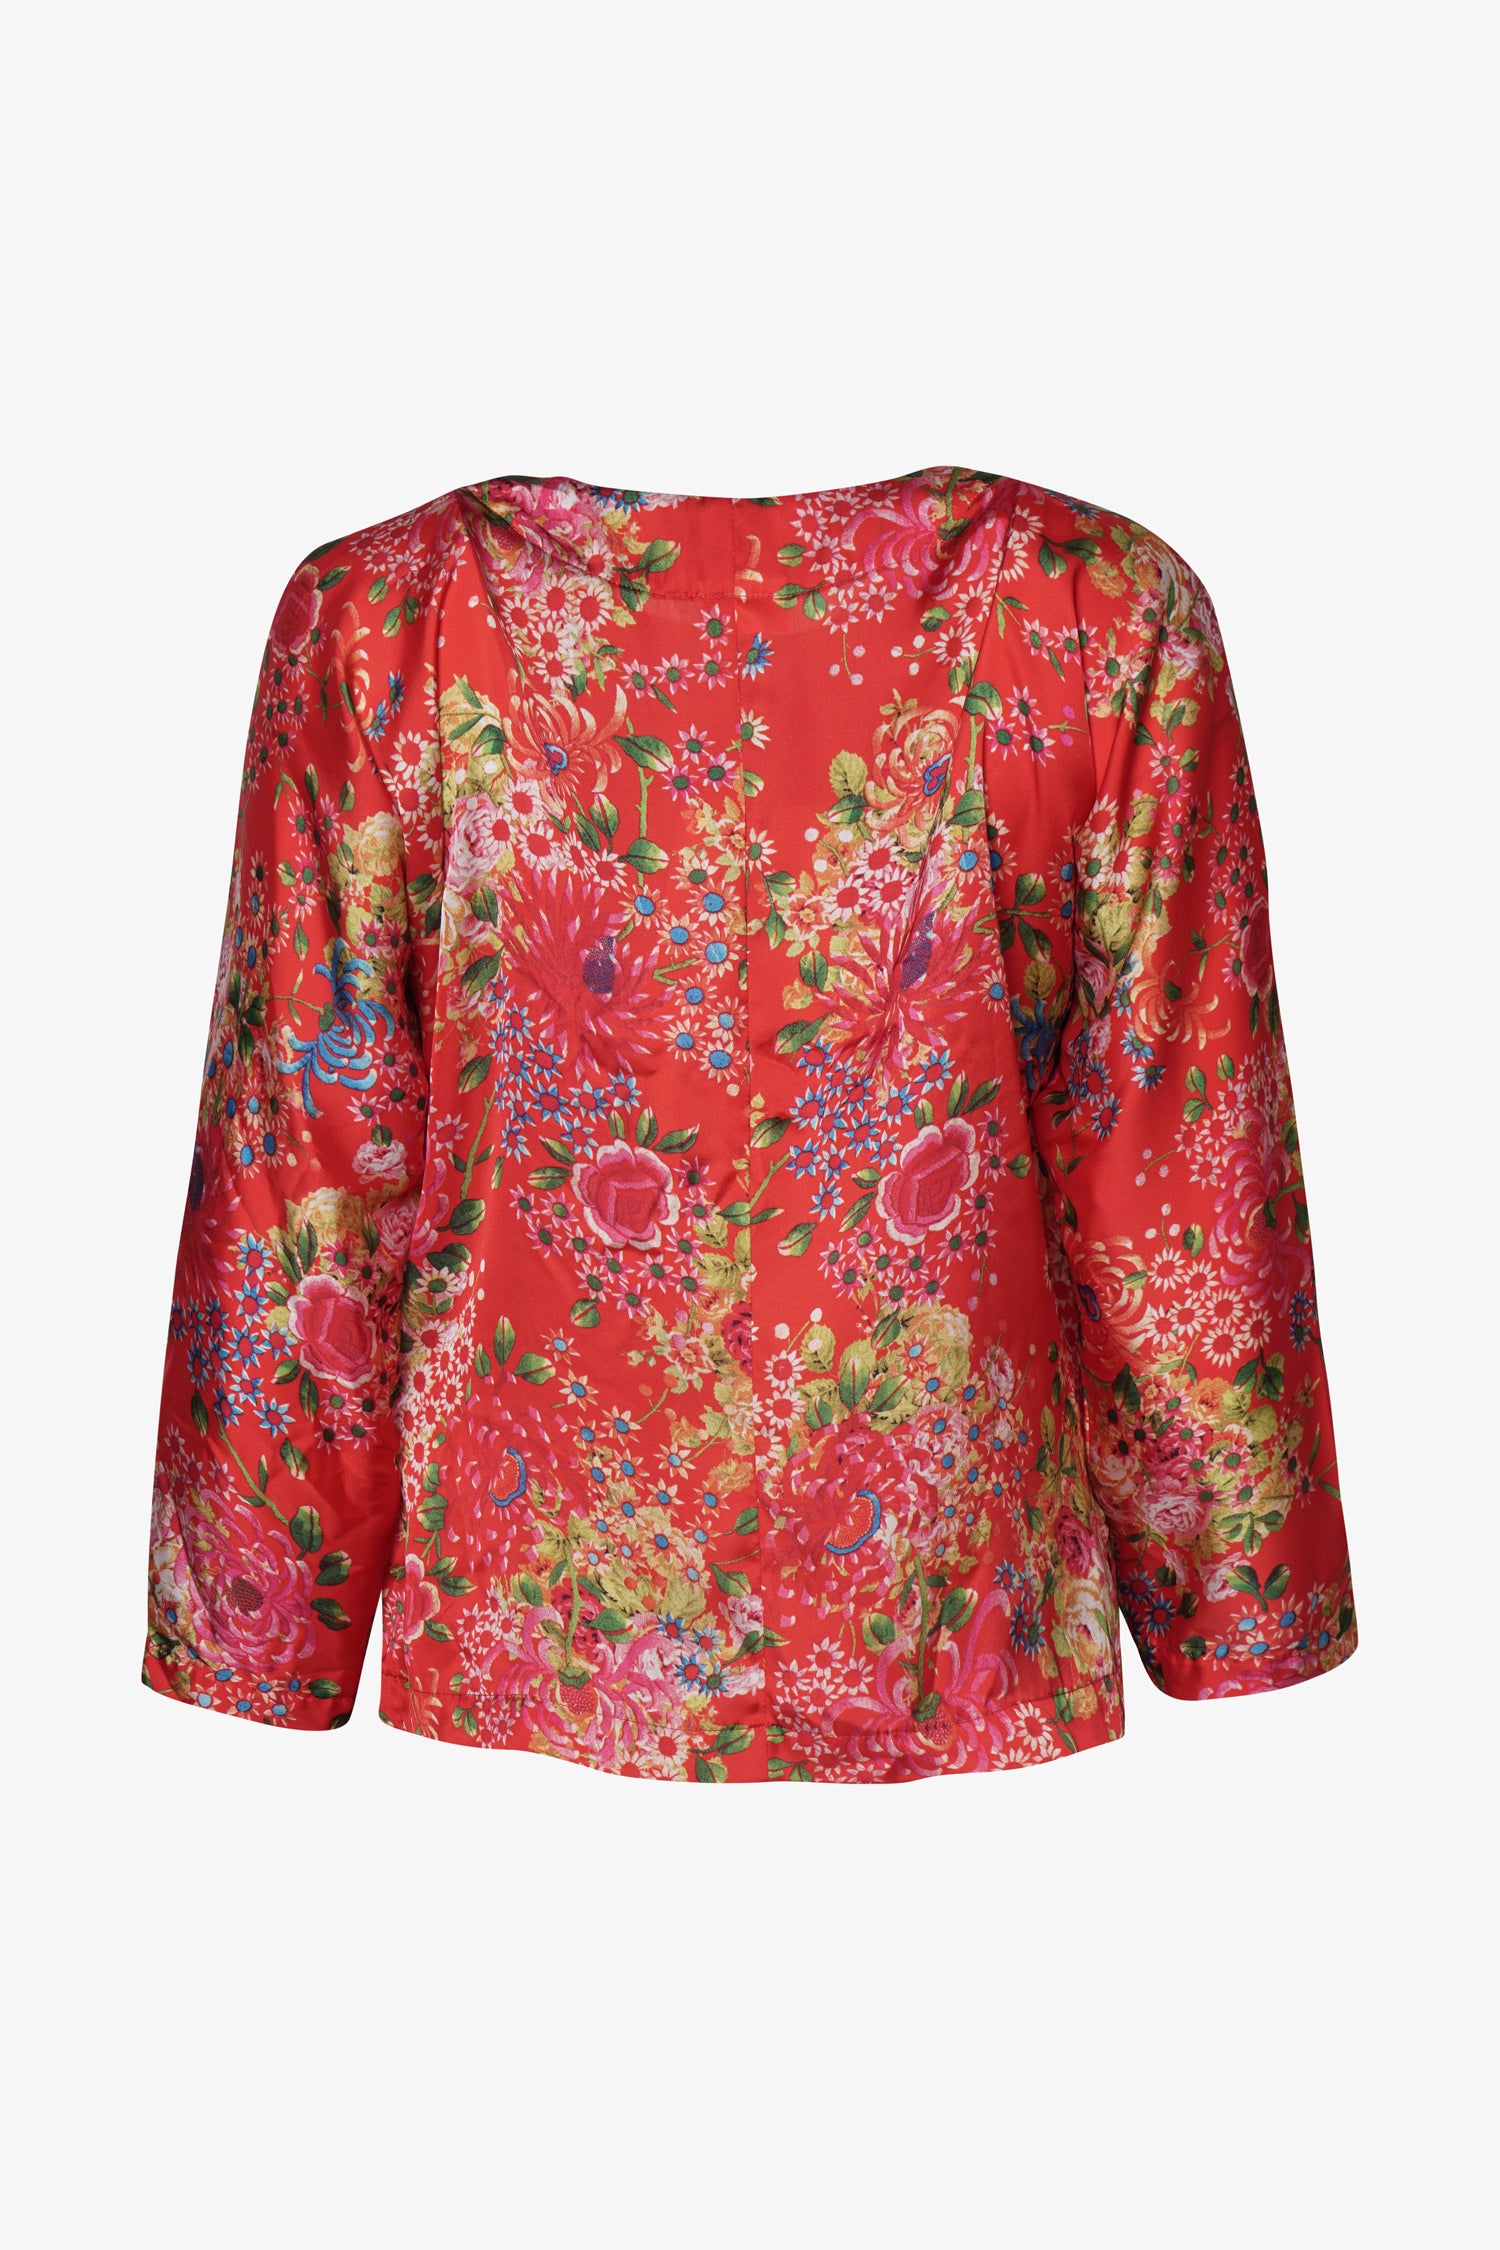 Selectshop FRAME - COMME DES GARCONS COMME DES GARCONS Floral-Print Blouse Shirts Dubai